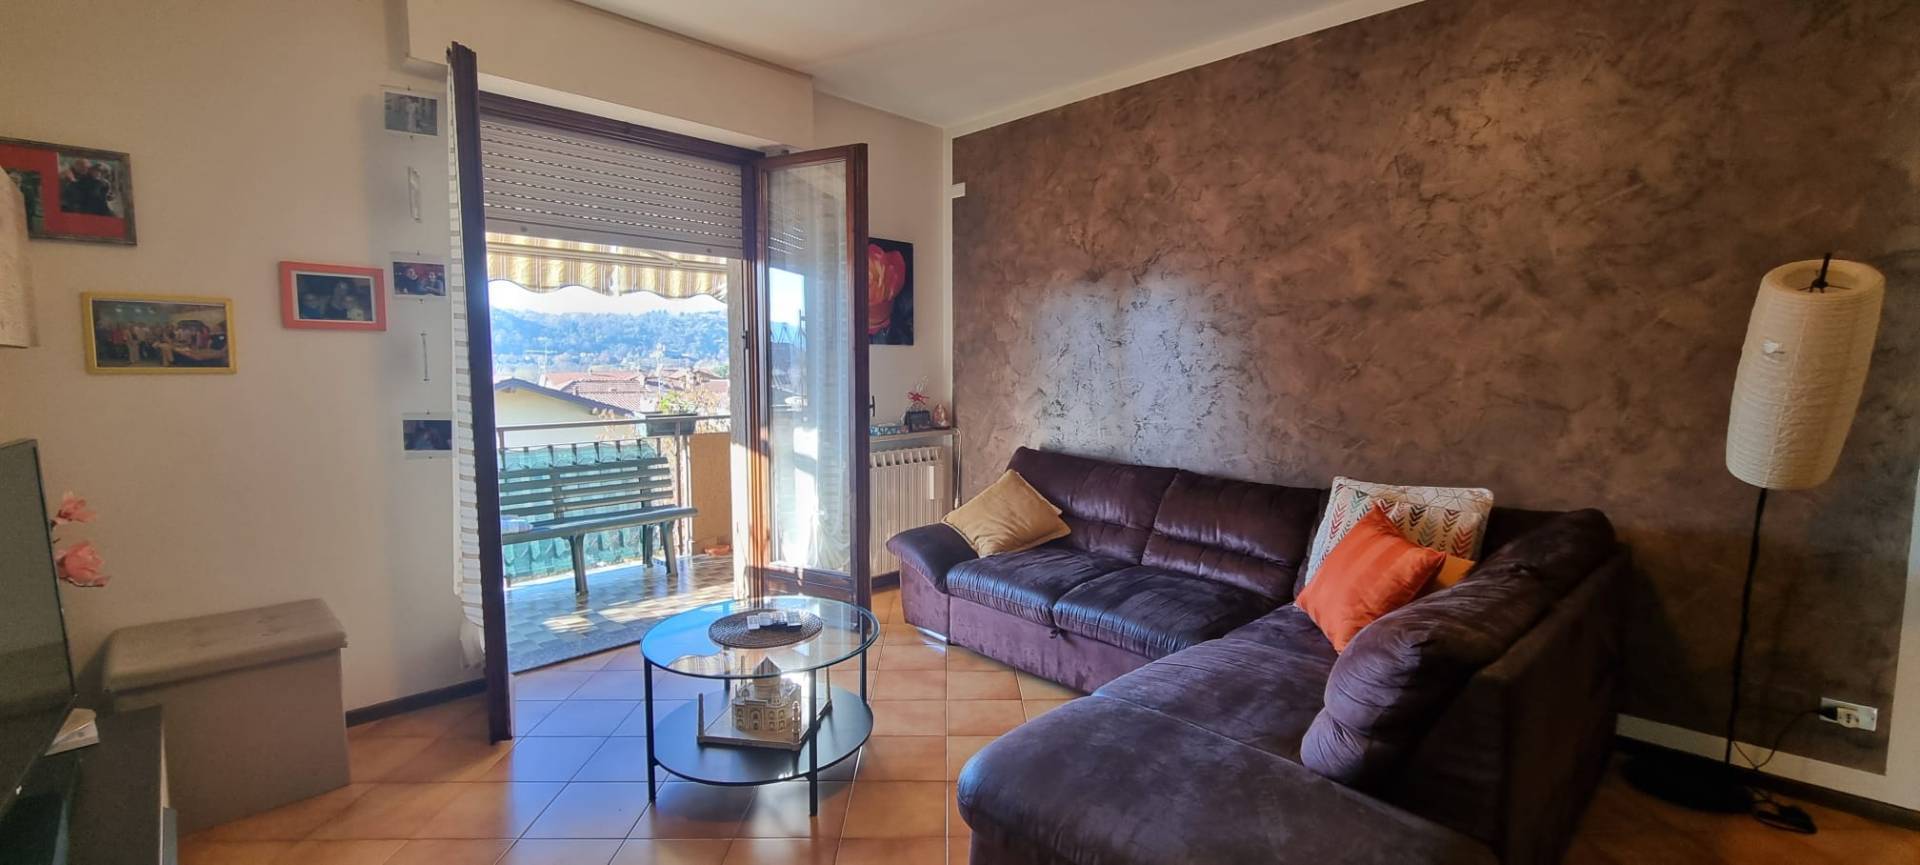 Appartamento in vendita a Villa d'Adda, 4 locali, prezzo € 189.000 | PortaleAgenzieImmobiliari.it